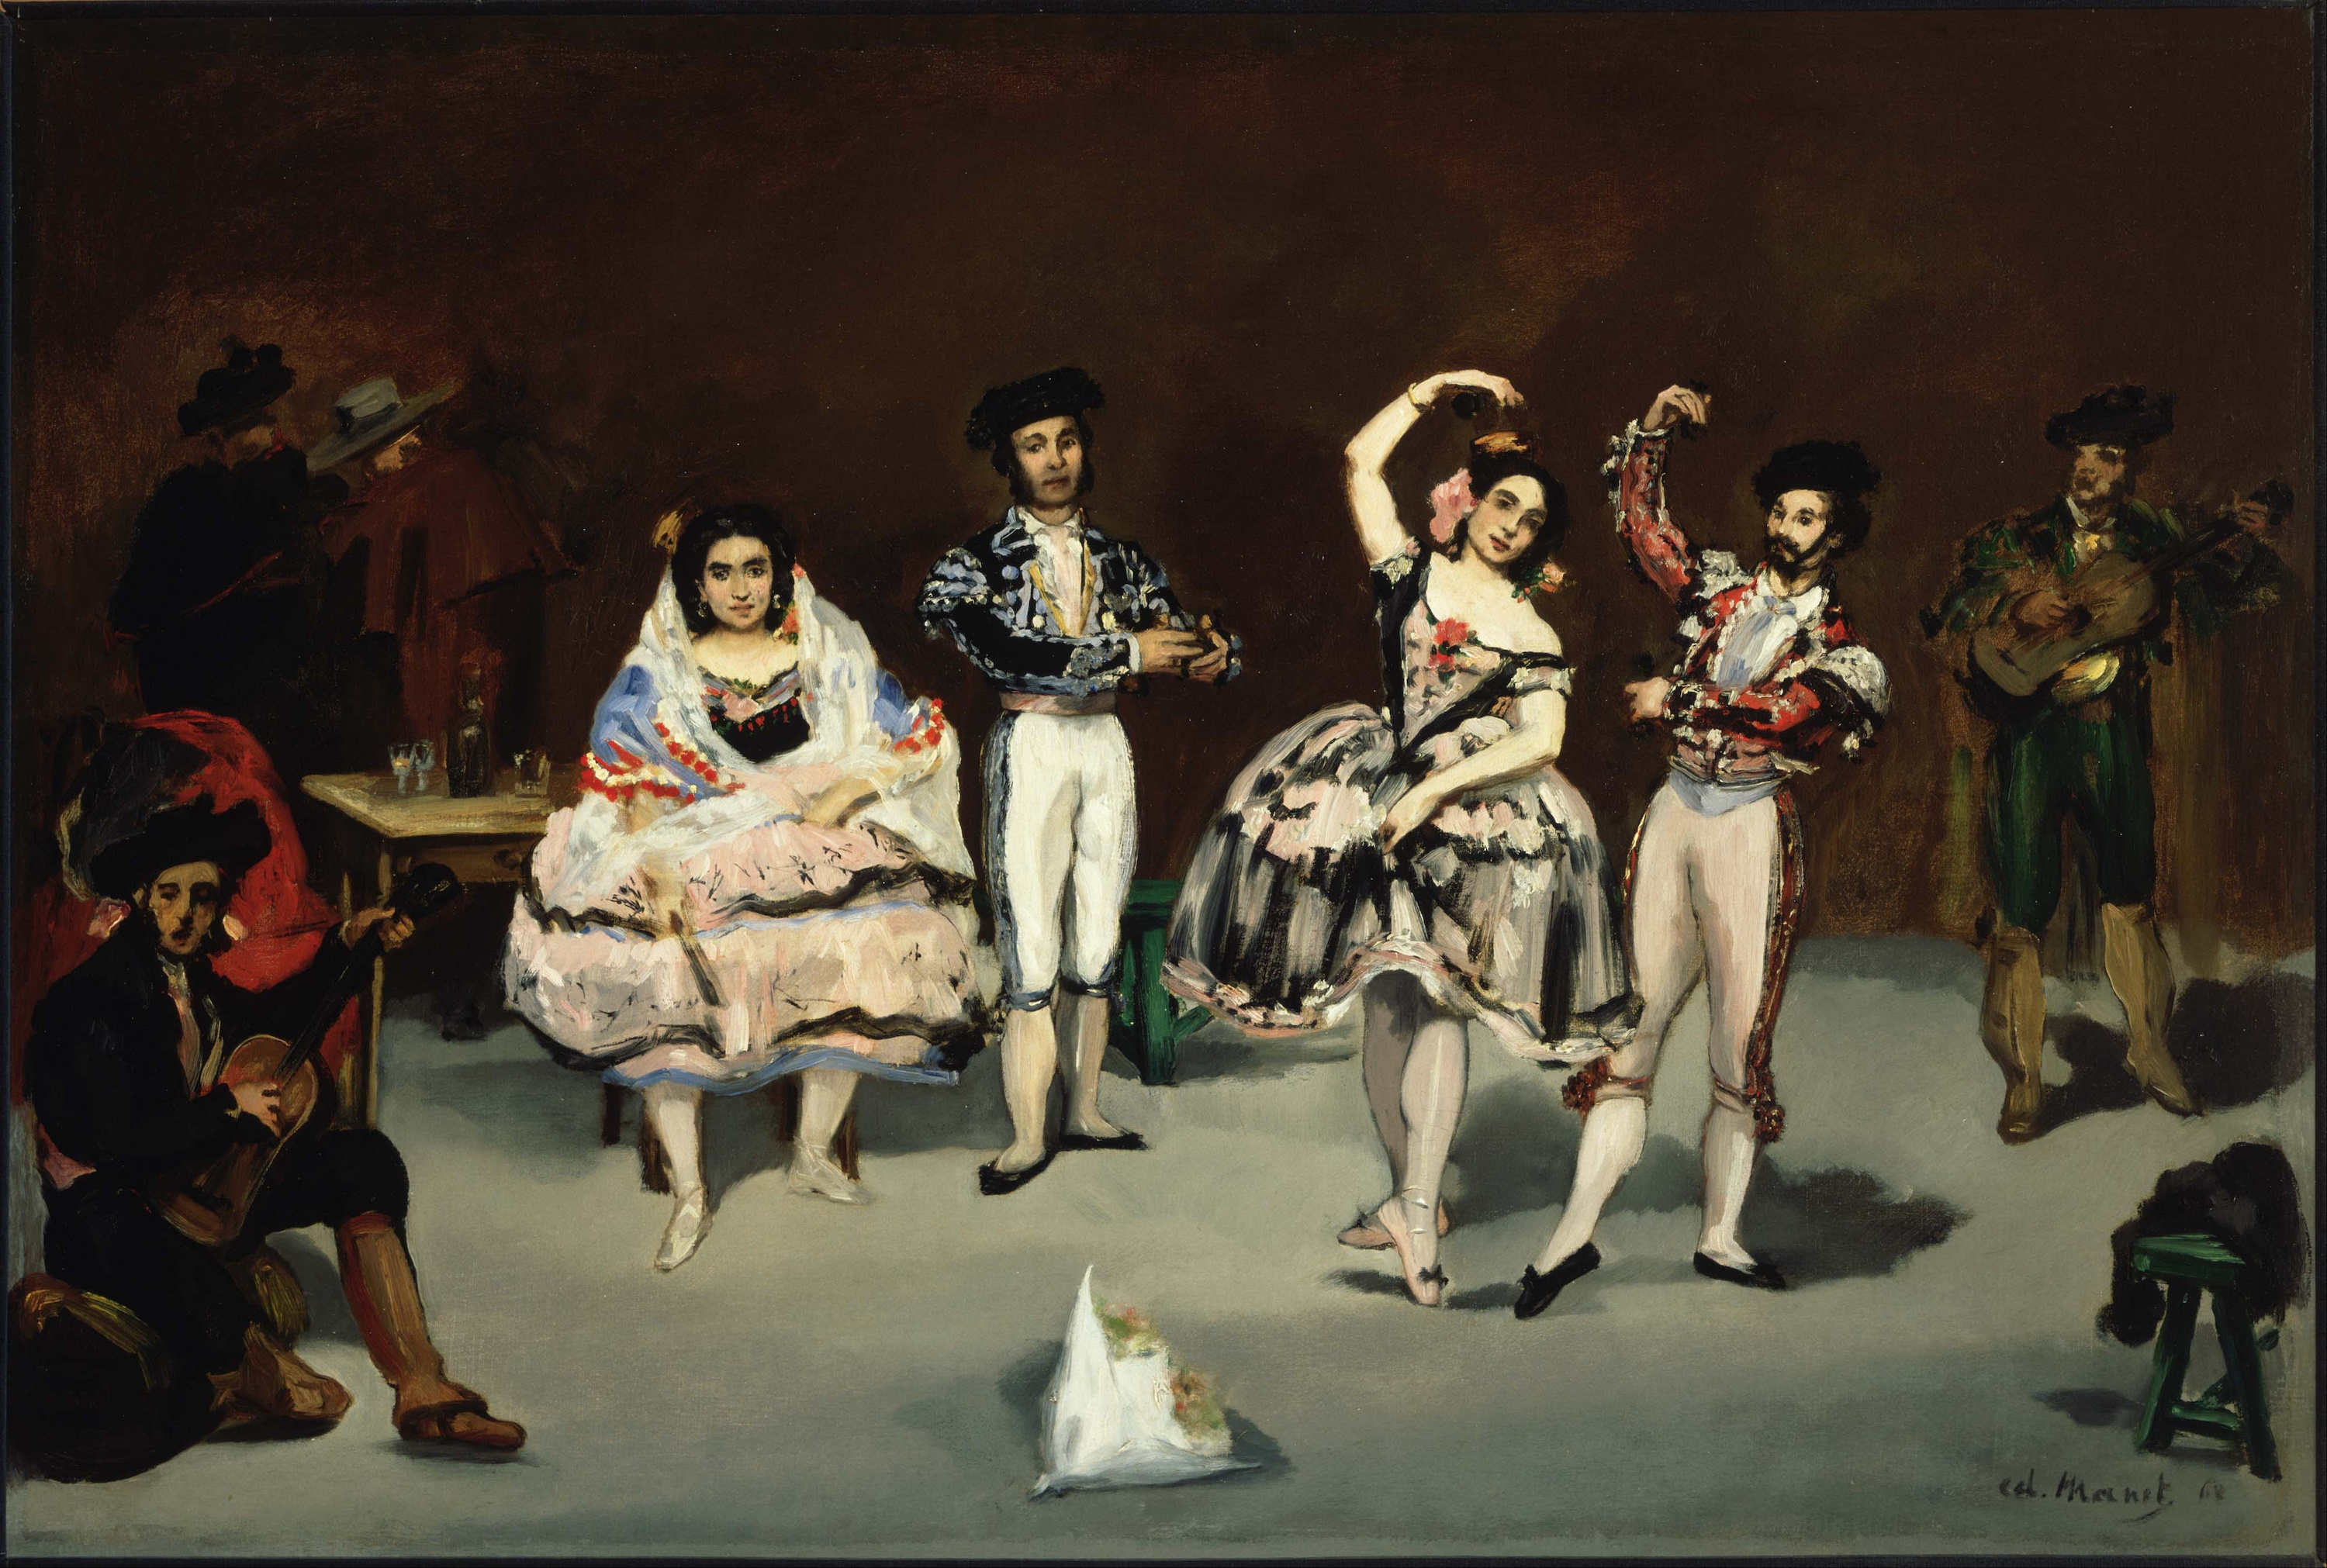 スペインのバレエ by Édouard Manet - 1862 - 35.63 x 24 in 